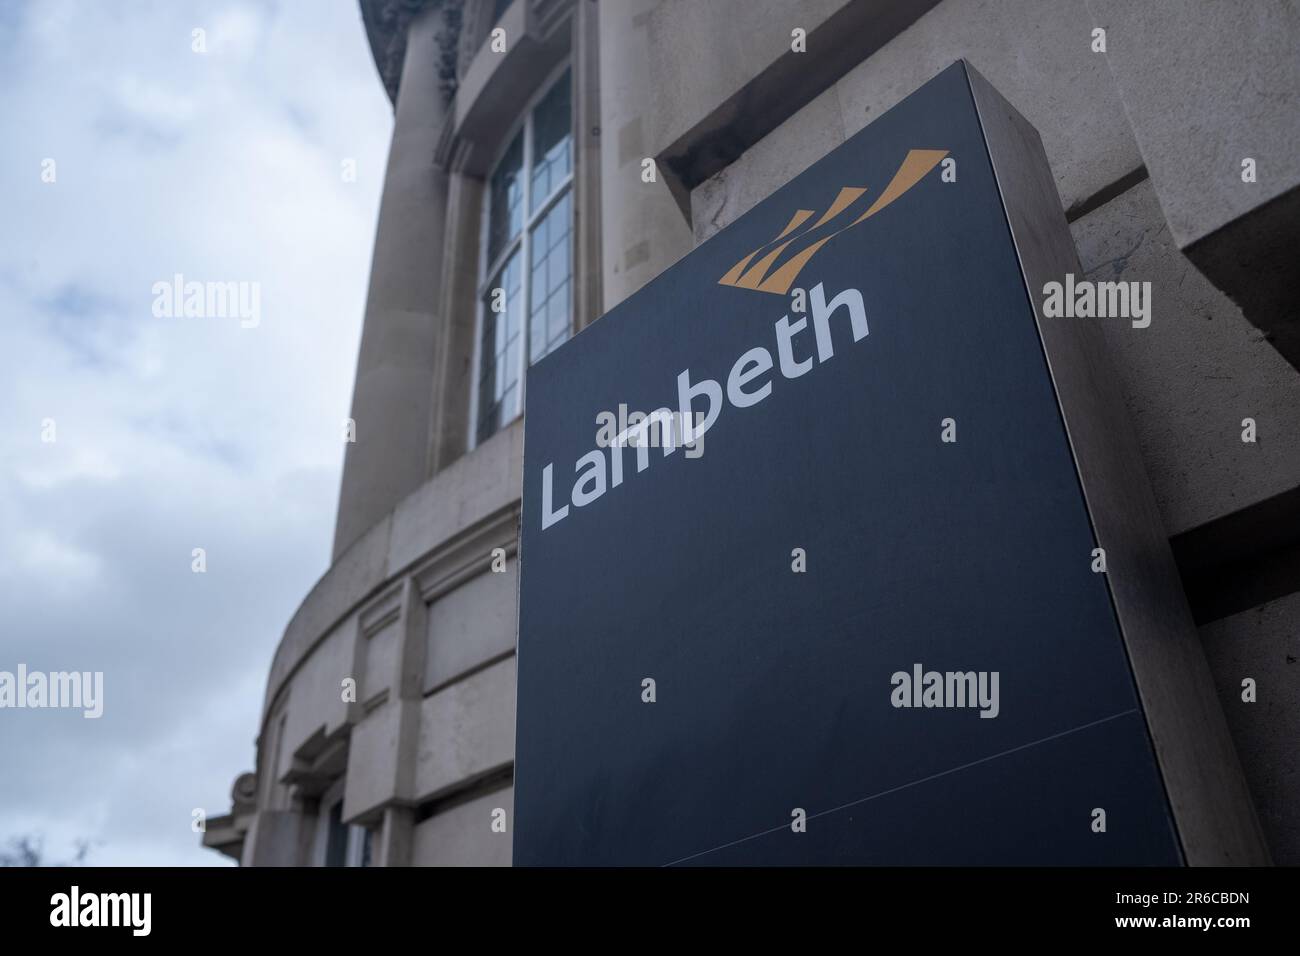 LONDRA, MARZO 2023: Il Lambeth London Borough Council firma e logo fuori dall'edificio del Municipio di Brixton, a sud-ovest di Londra Foto Stock